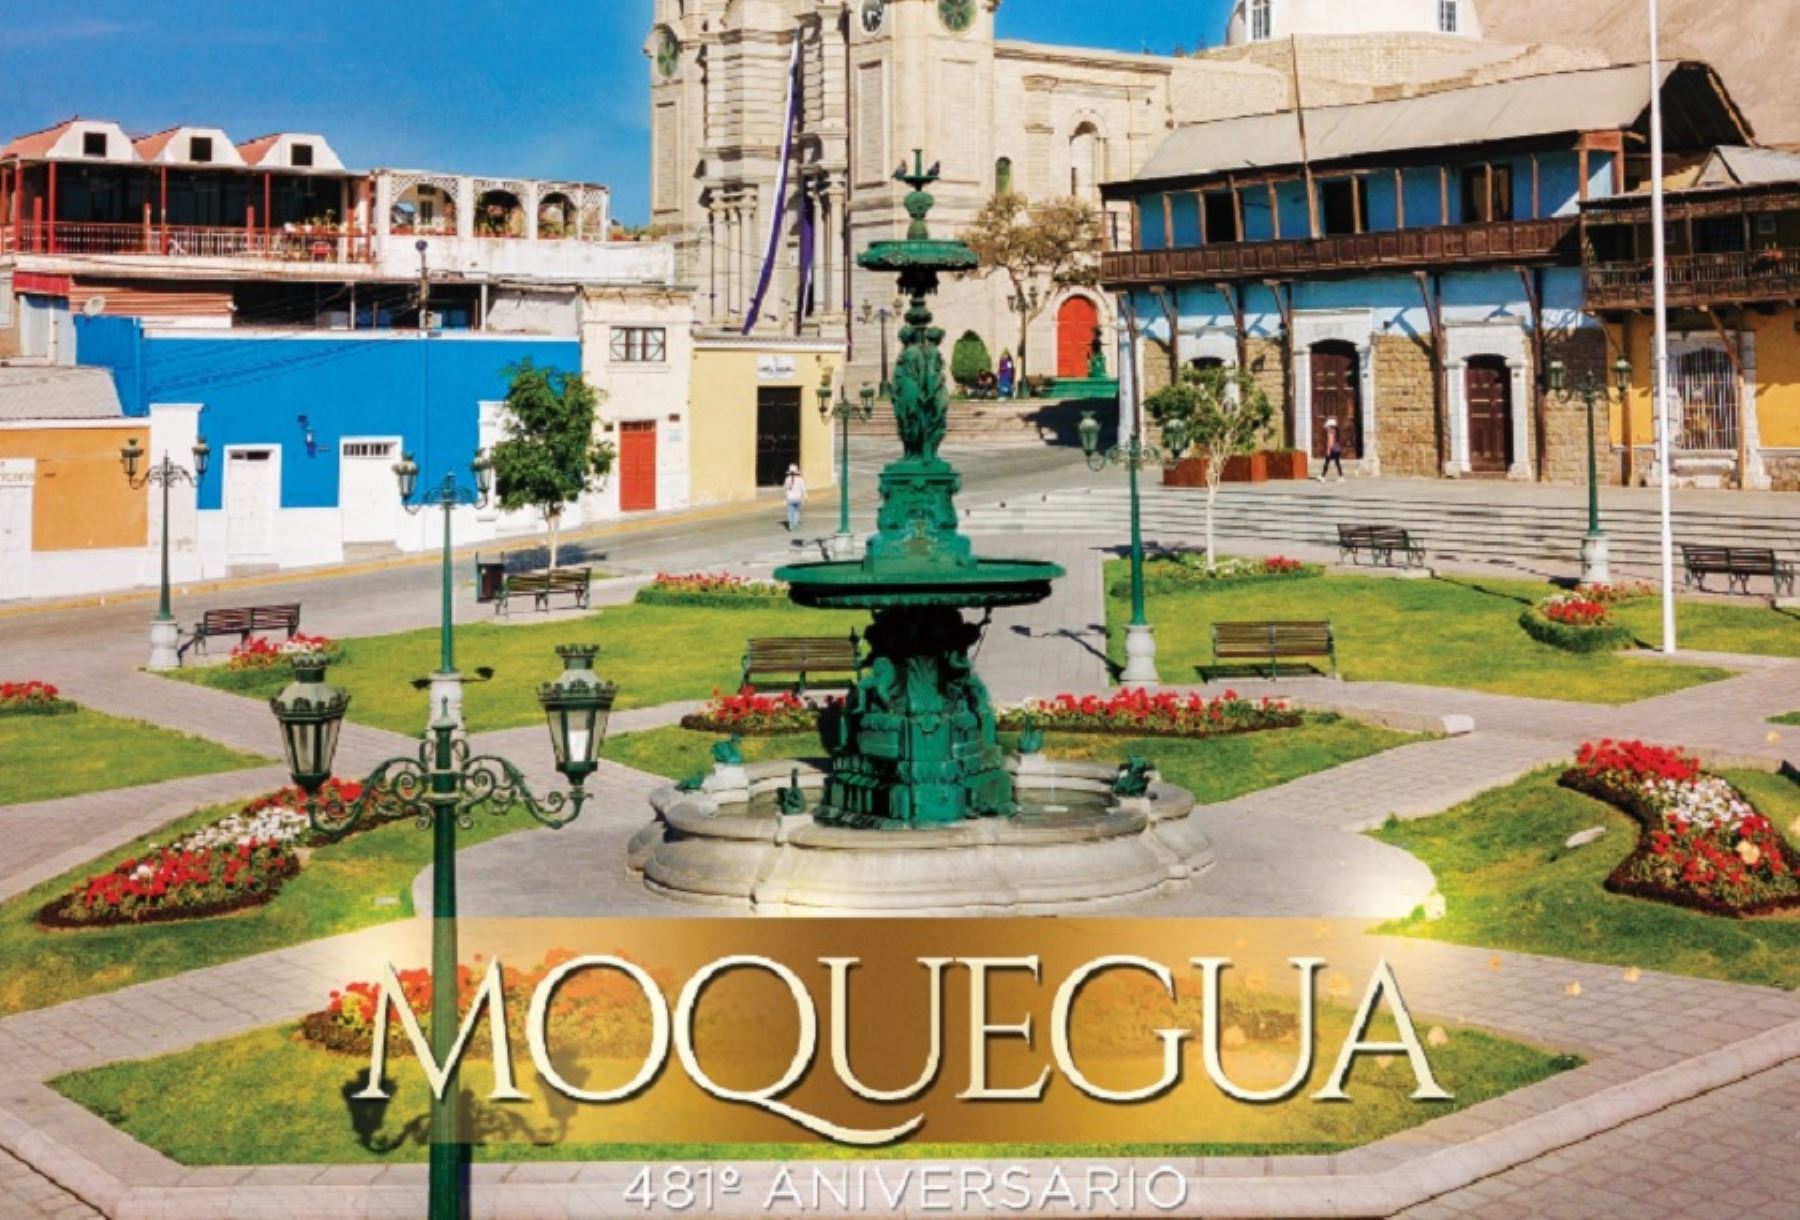 Ubicada a mitad del camino entre los Andes y el mar de Grau, la ciudad de Moquegua se apresta a celebrar con entusiasmo su 481 aniversario de fundación española.